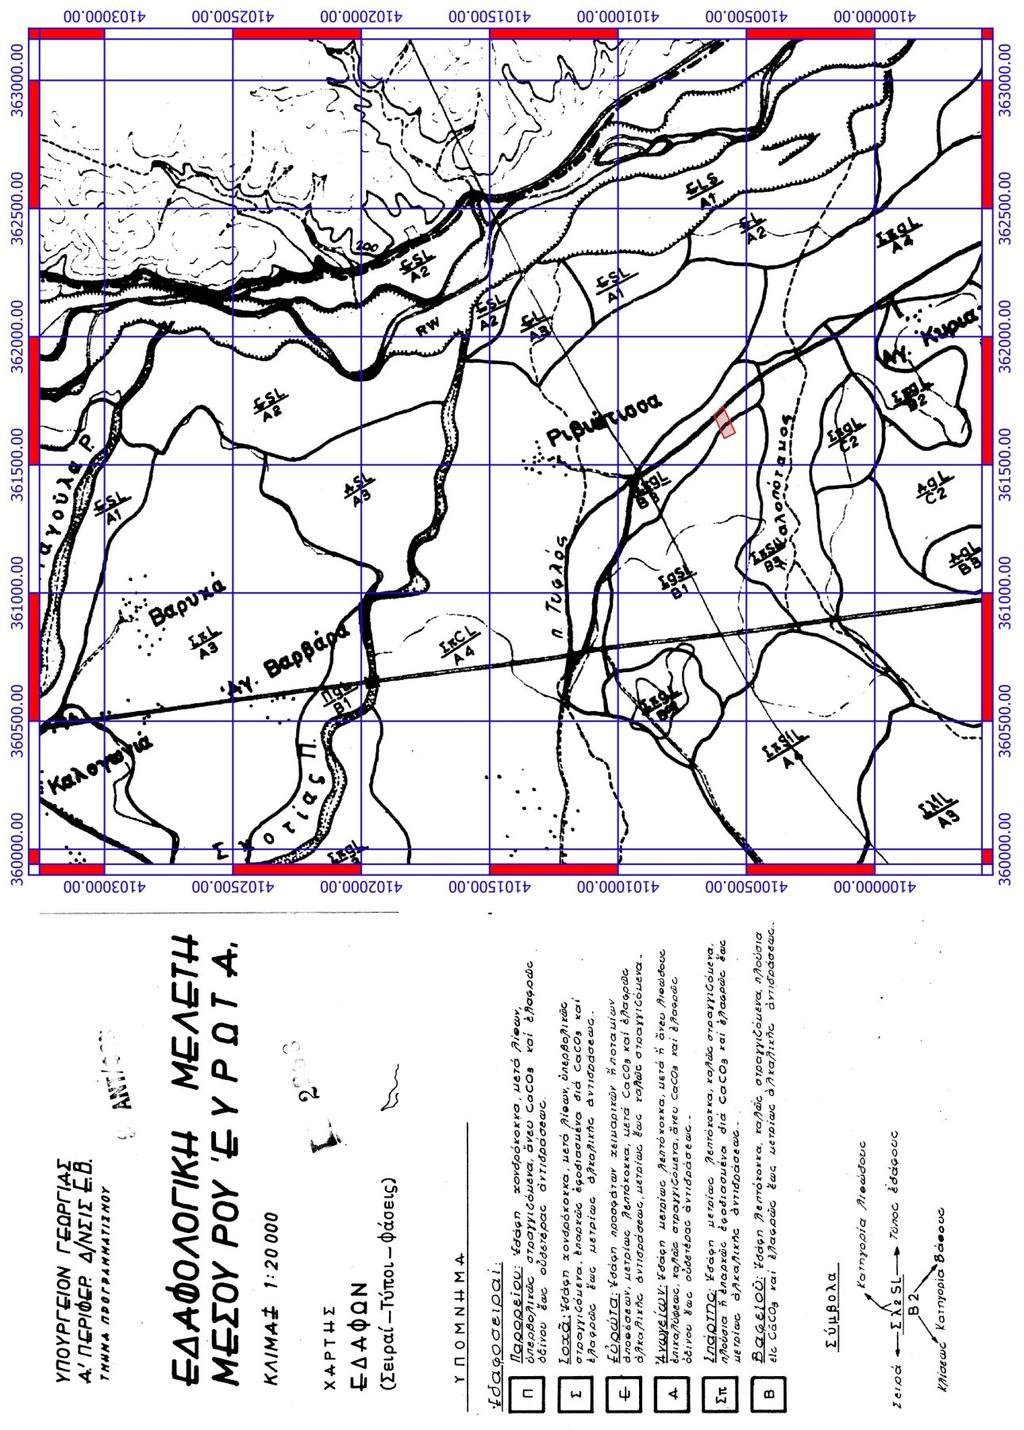 Σχήμα 9 Άπόσπασμα χάρτη Εδαφολογικής Μελέτης Μέσου Ρου Ευρώτα γεωαναφερμένο στον οποίο εμφανίζονται οι τα εδάφη καθώς και η θέση του πειραματικού αγρού Γεωπονικό Πανεπιστήμιο